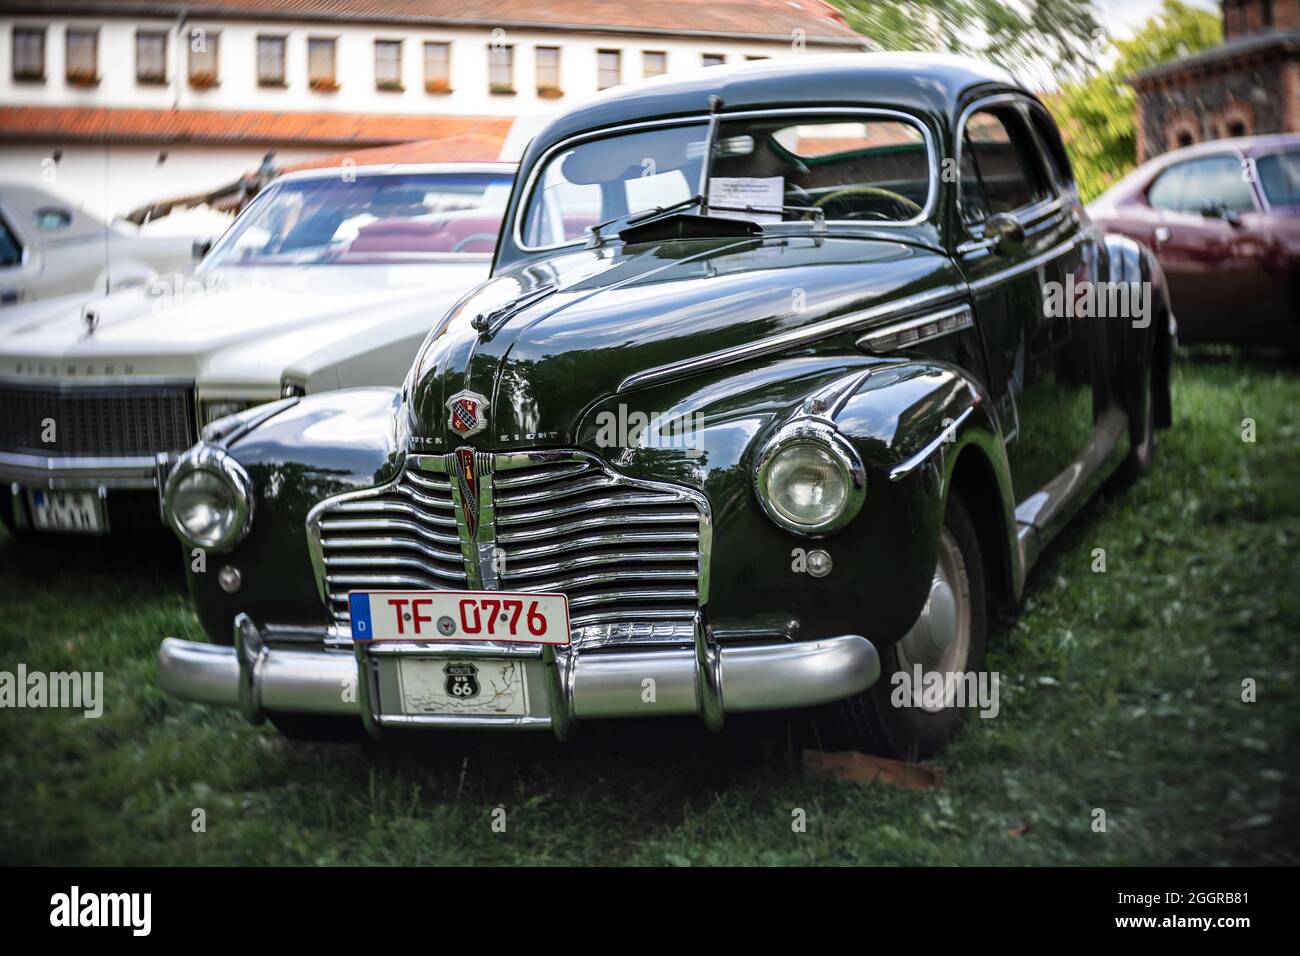 La voiture pleine grandeur spéciale Sedanette de Buick, 1941. Concentrez-vous sur le centre. Bokeh de Swirly. L'exposition « US car Classics ». Banque D'Images